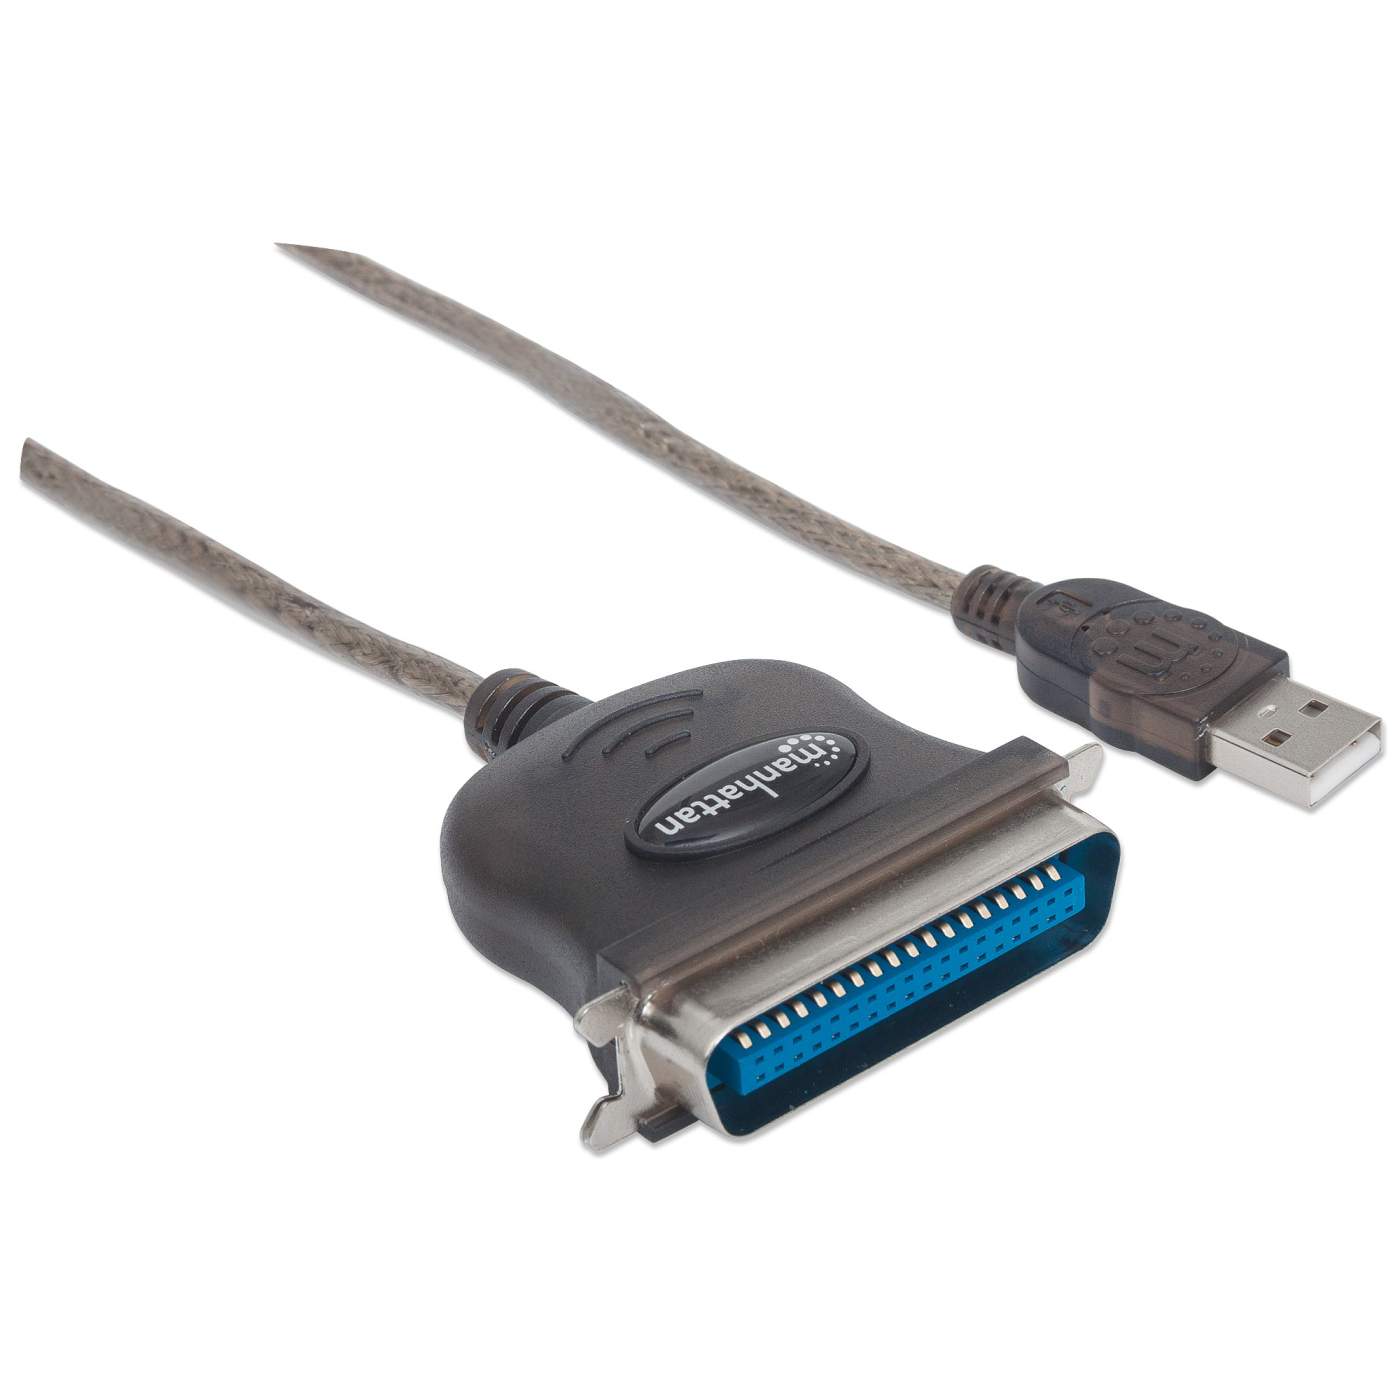 Full-Speed USB to Cen36 Parallel Printer Converter Image 3